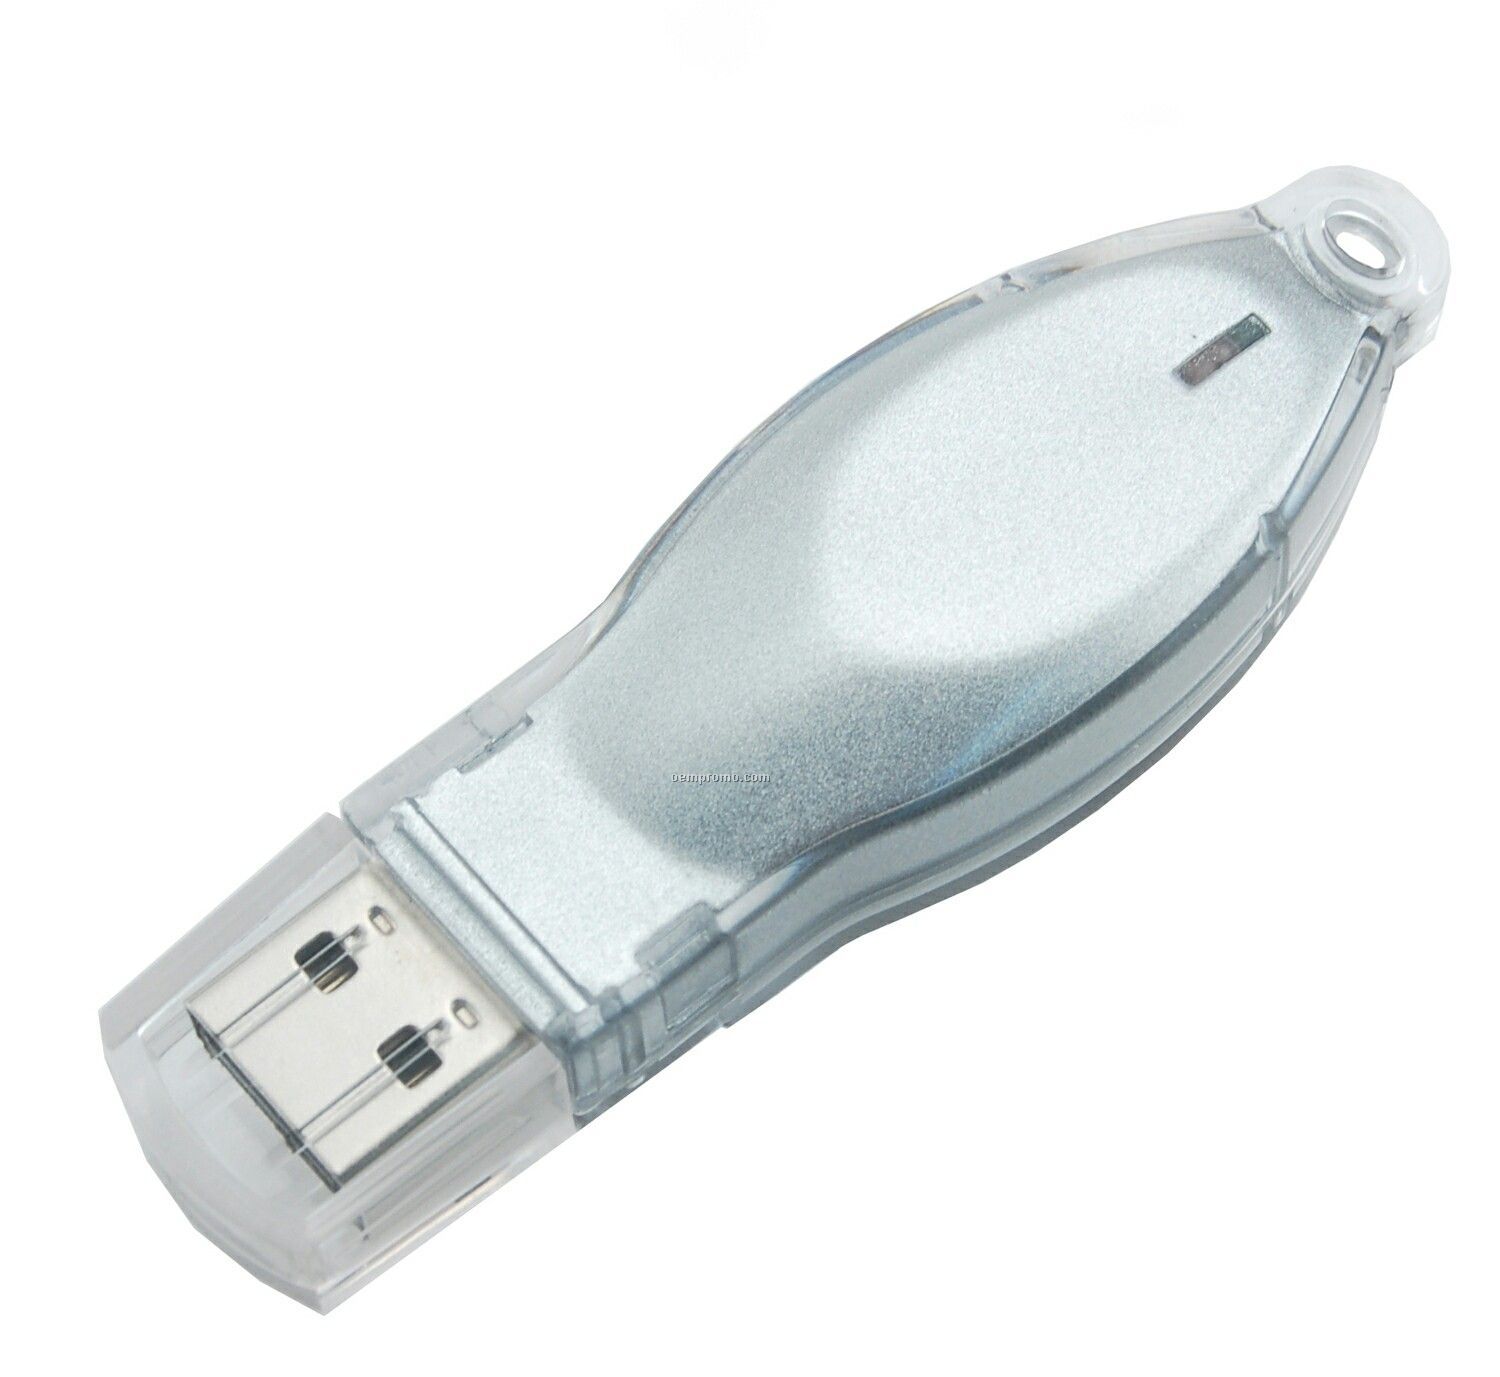 1 Gb Mosaic 200 Series USB Drive